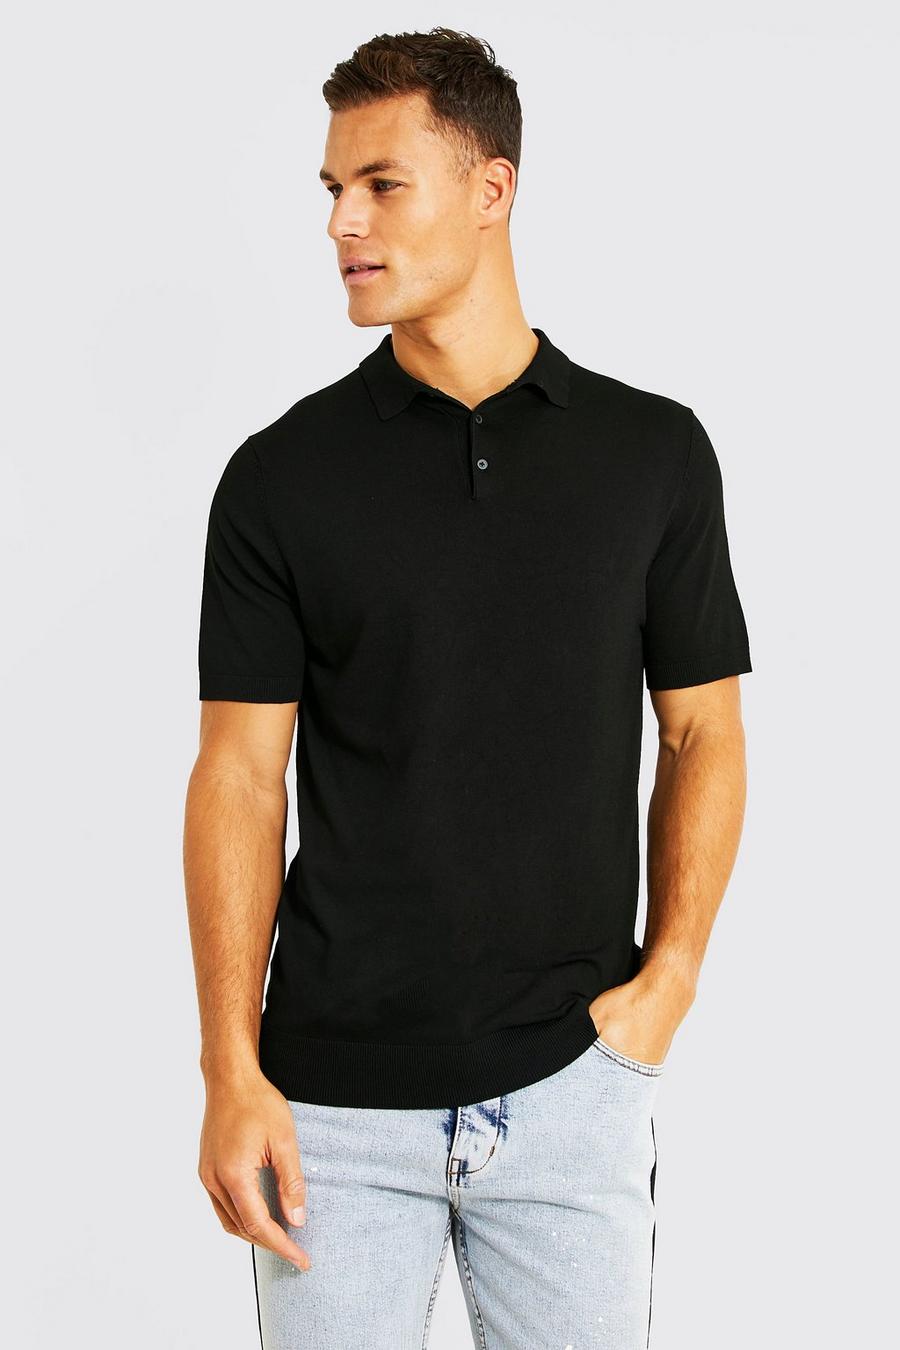 שחור black חולצת פולו סרוגה מבד ממוחזר עם שרוולים קצרים, לגברים גבוהים